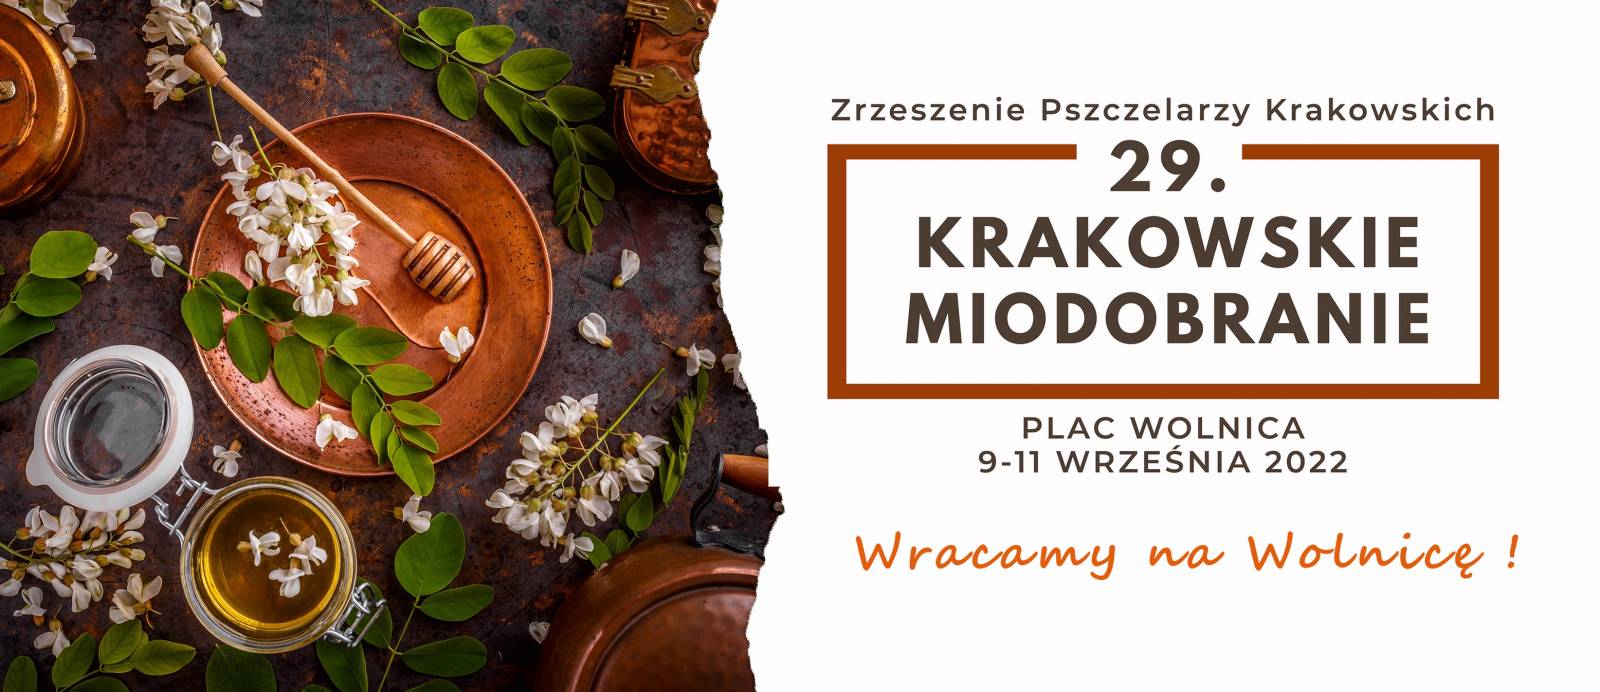 29. Krakowskie Miodobranie